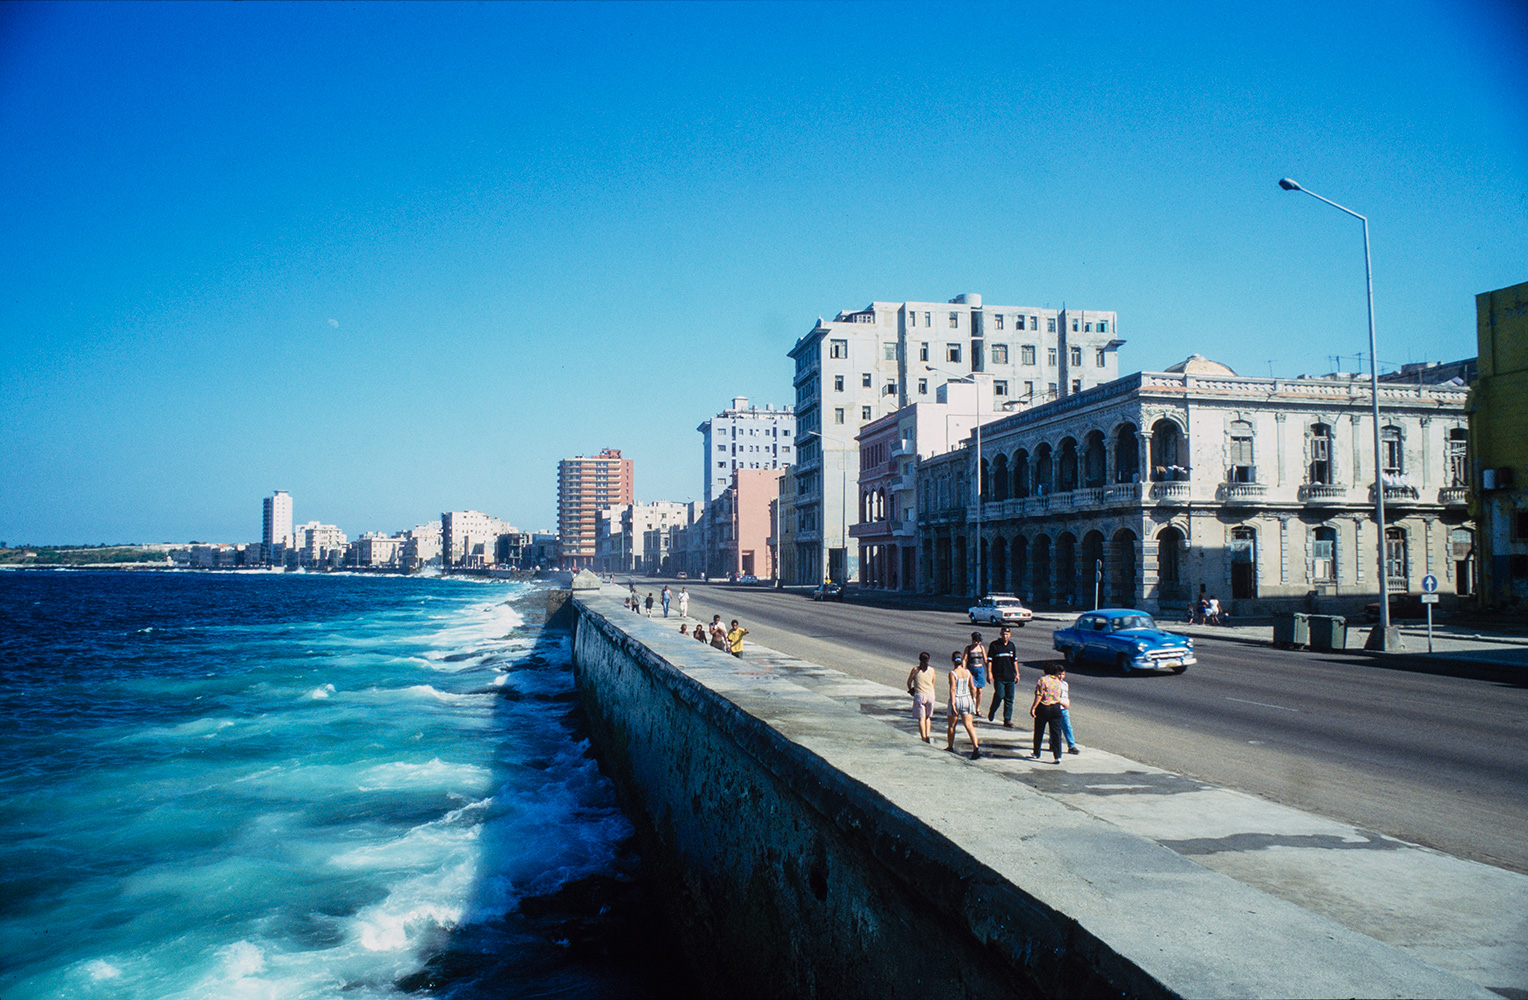 Havana's iconic seafront promenade